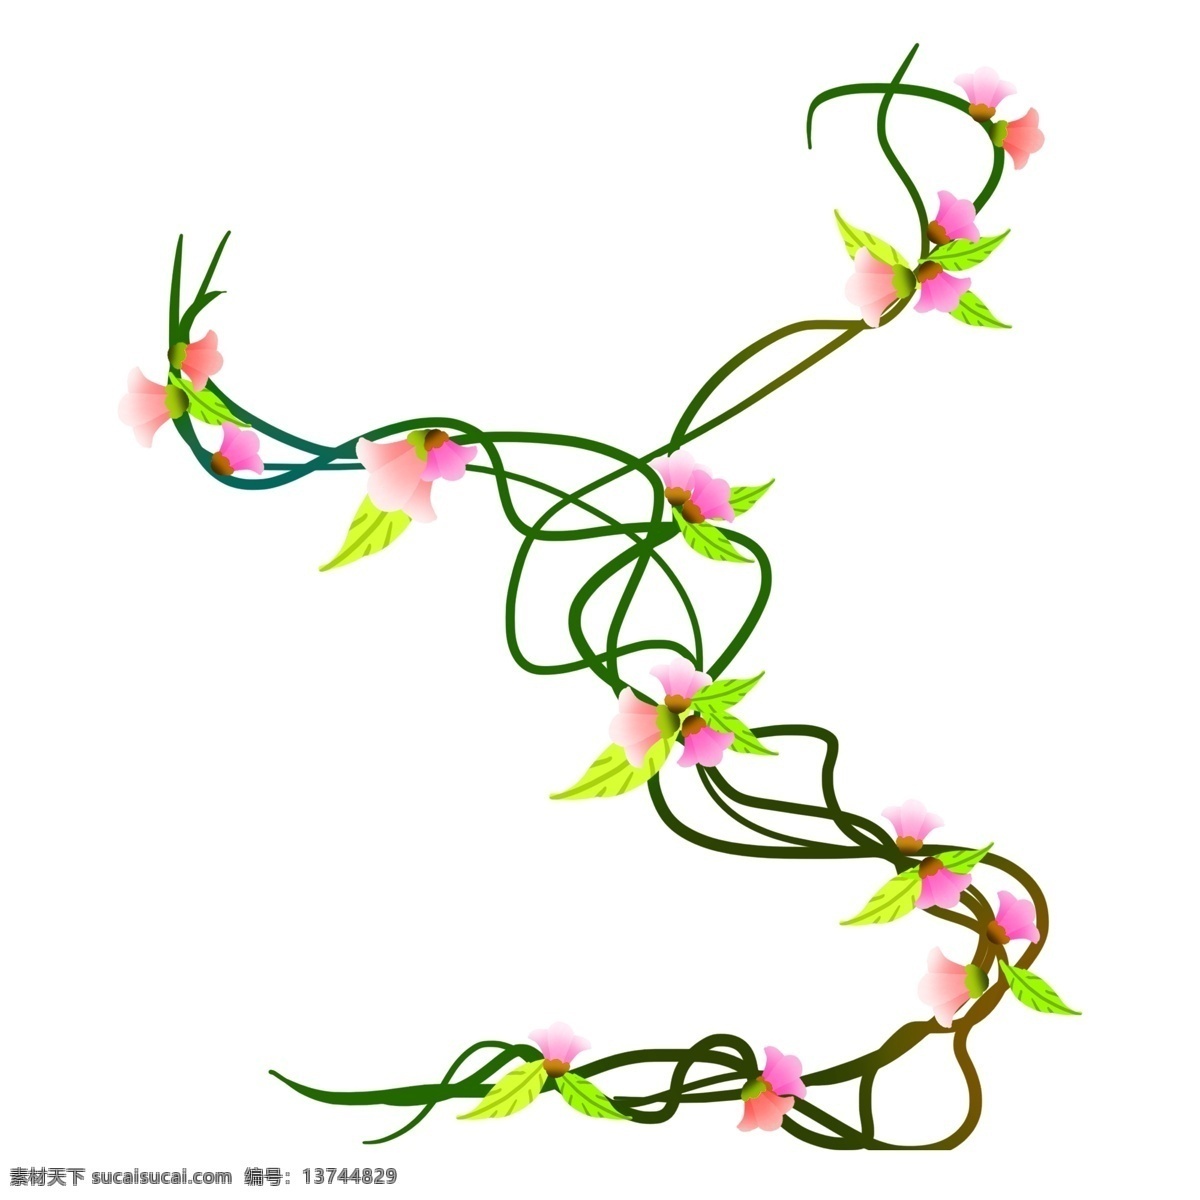 绿色 缠绕 树枝 插图 粉色花瓣 绿色树枝 缠绕的树枝 黄色树叶 大自然 户外树枝 卡通设计 平面设计